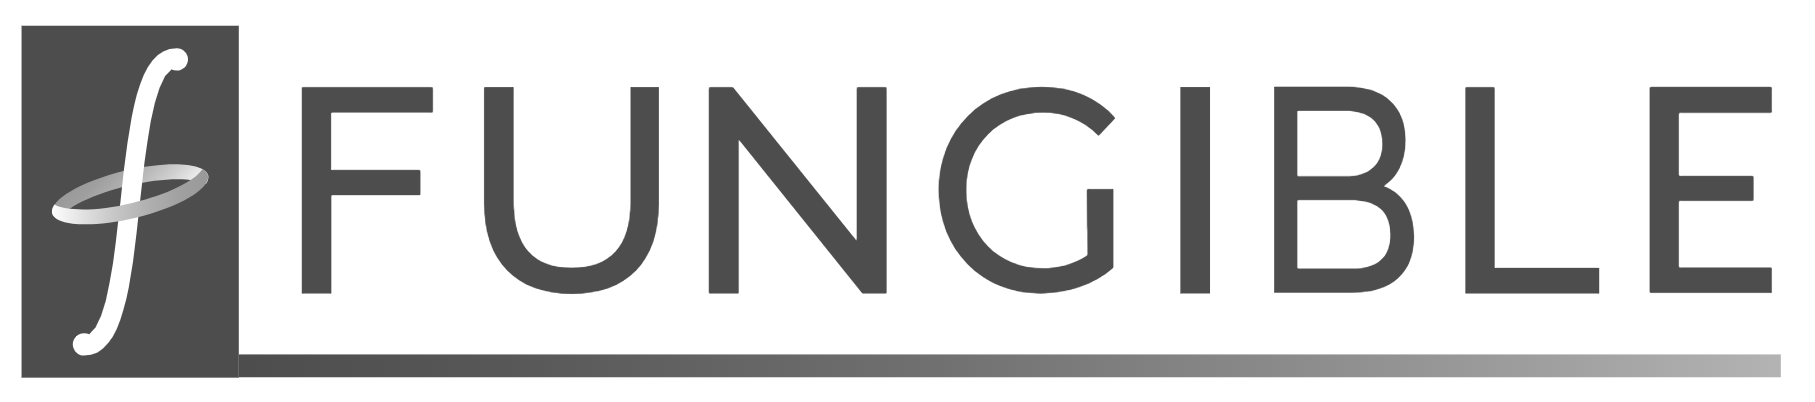 fungible-logo.png